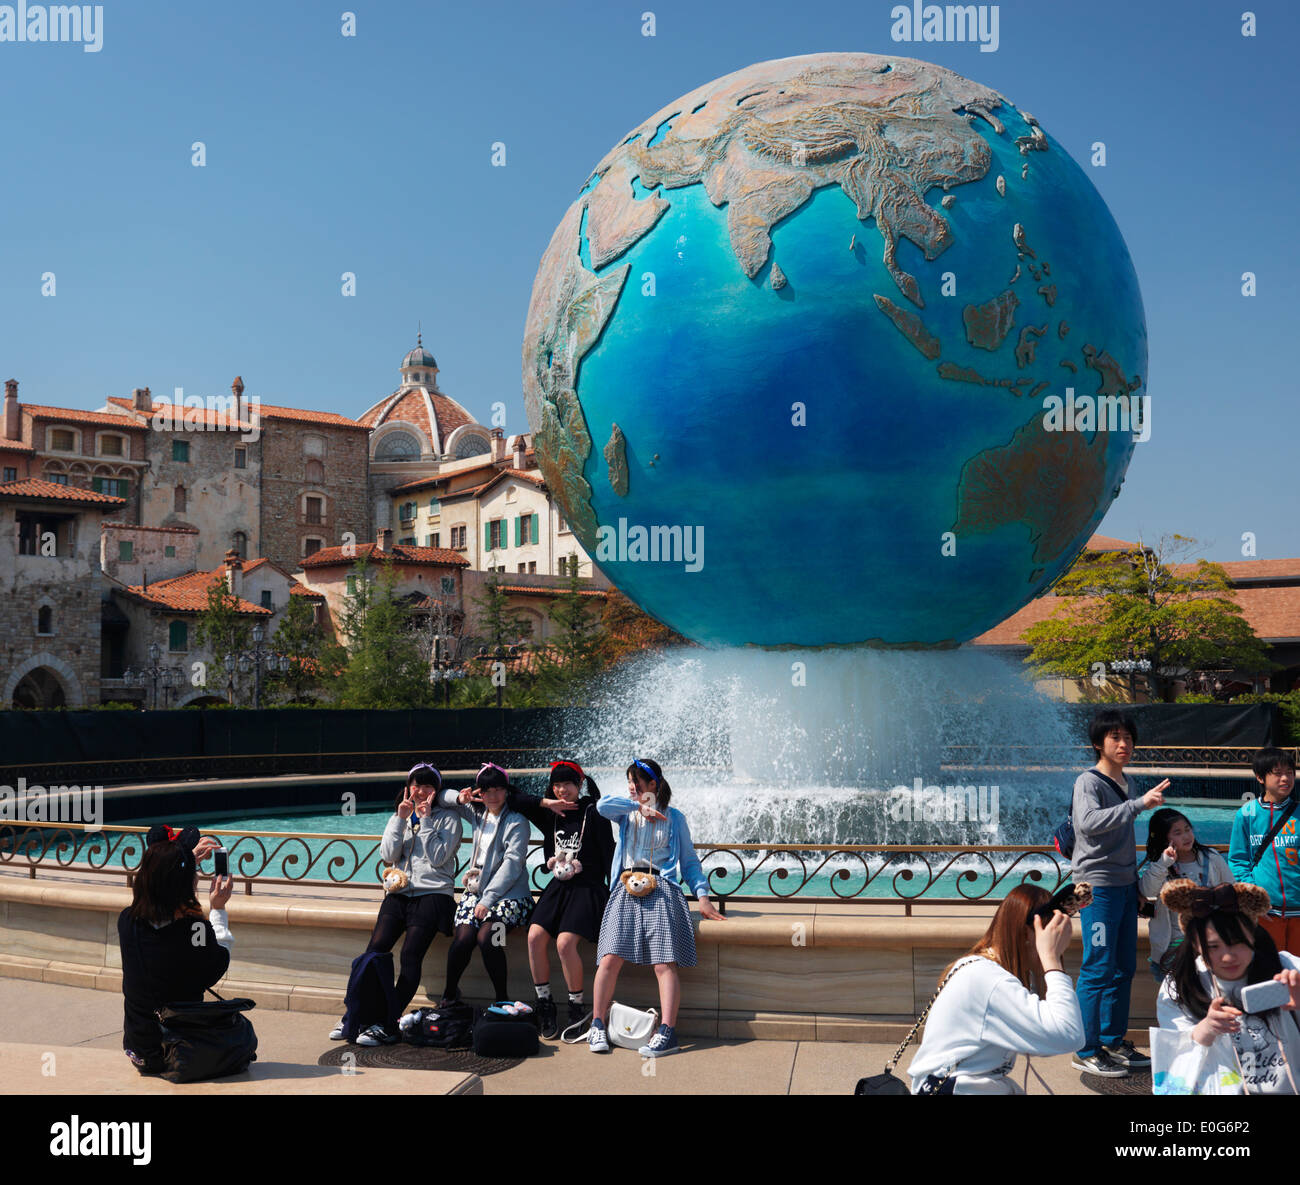 Jeunes filles posant pour une photo à terre fontaine globe à Tokyo Disneysea restort Disney theme park, Japon Banque D'Images